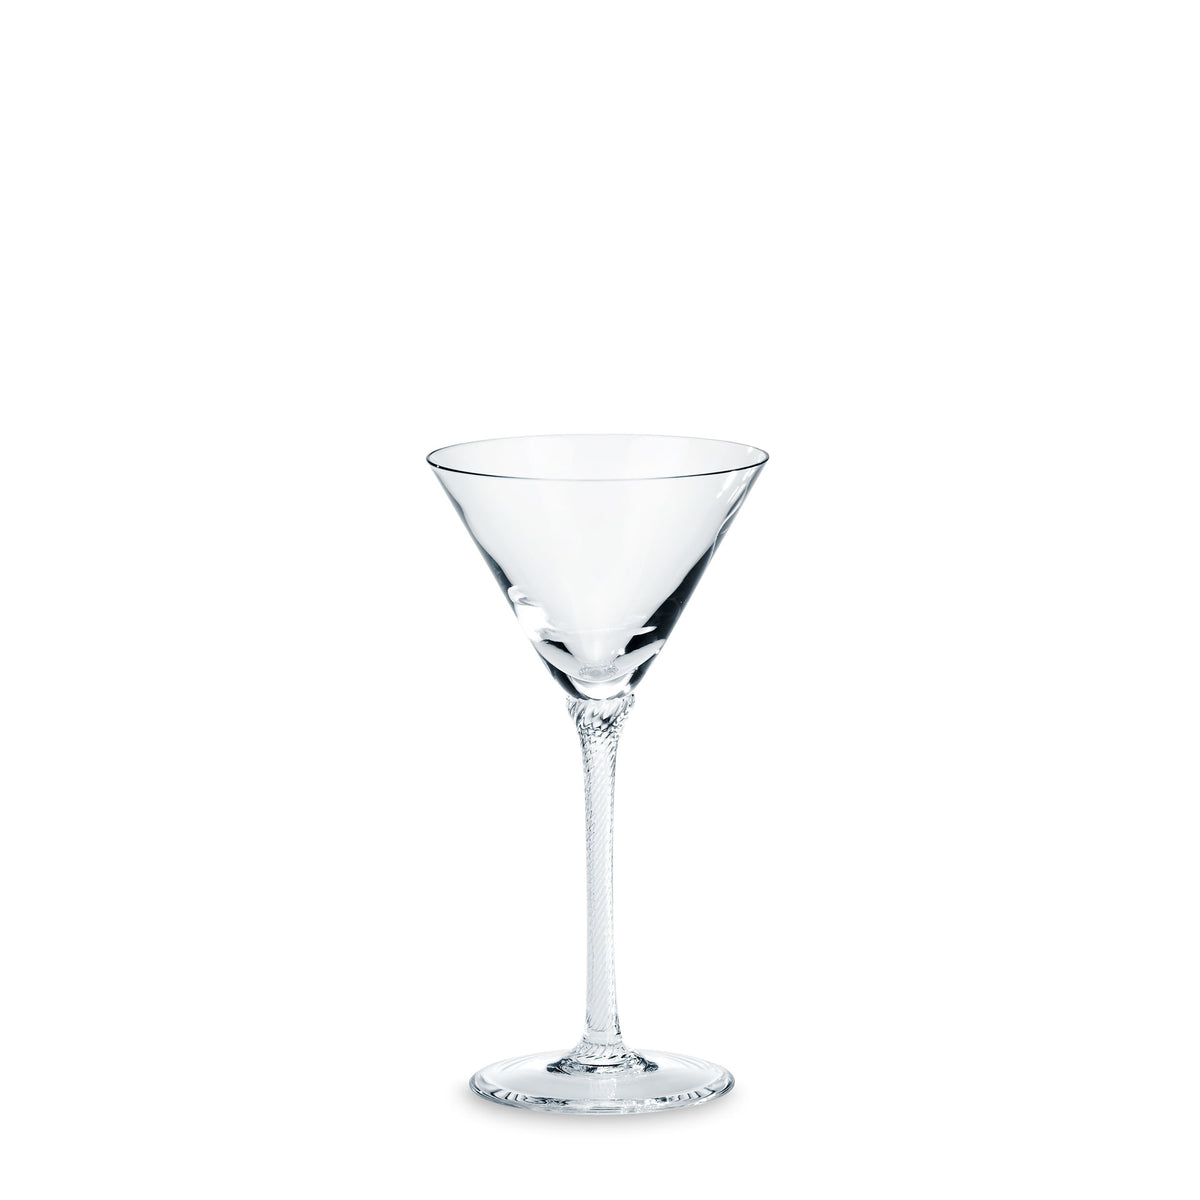 Château Cocktailglas - ABVERKAUF - 50% REDUZIERT